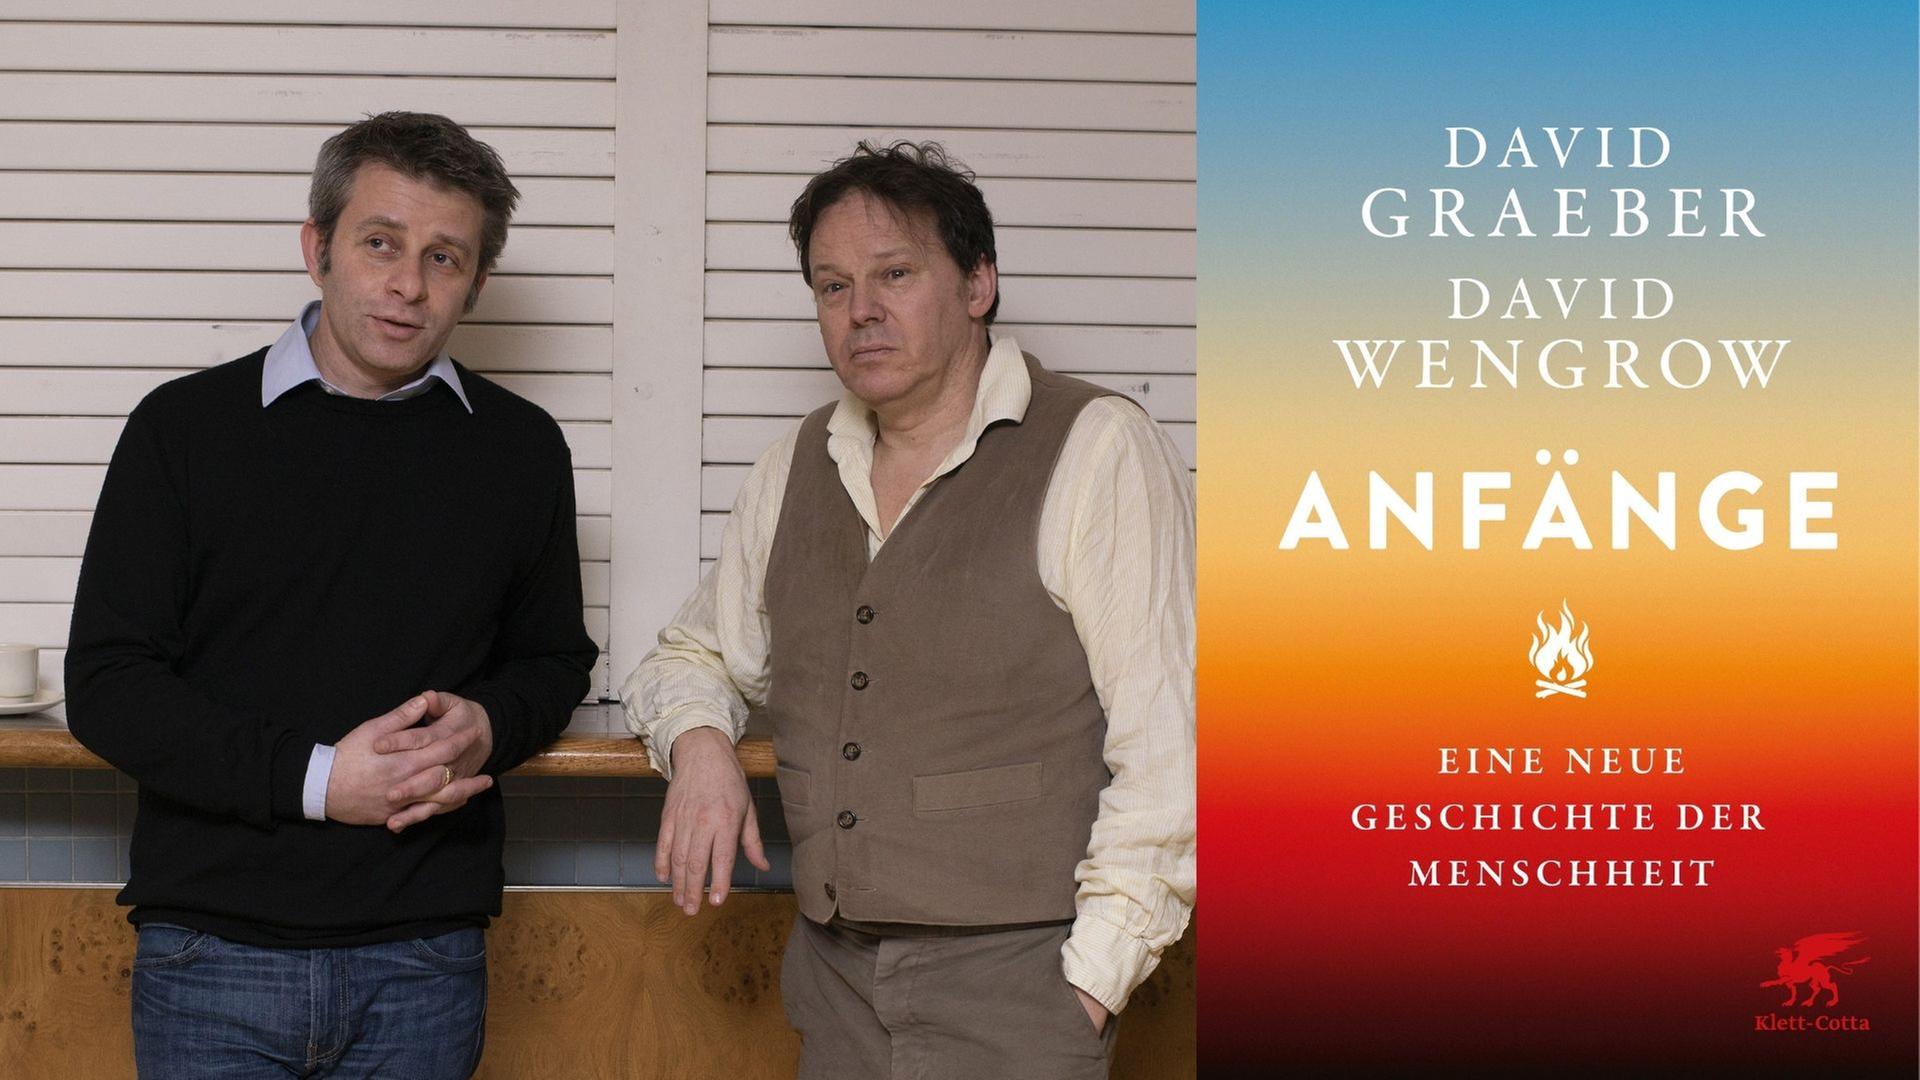 David Wengrow (links) und David Graeber (rechts) haben eine "Neue Geschichte der Menschheit“ geschrieben.